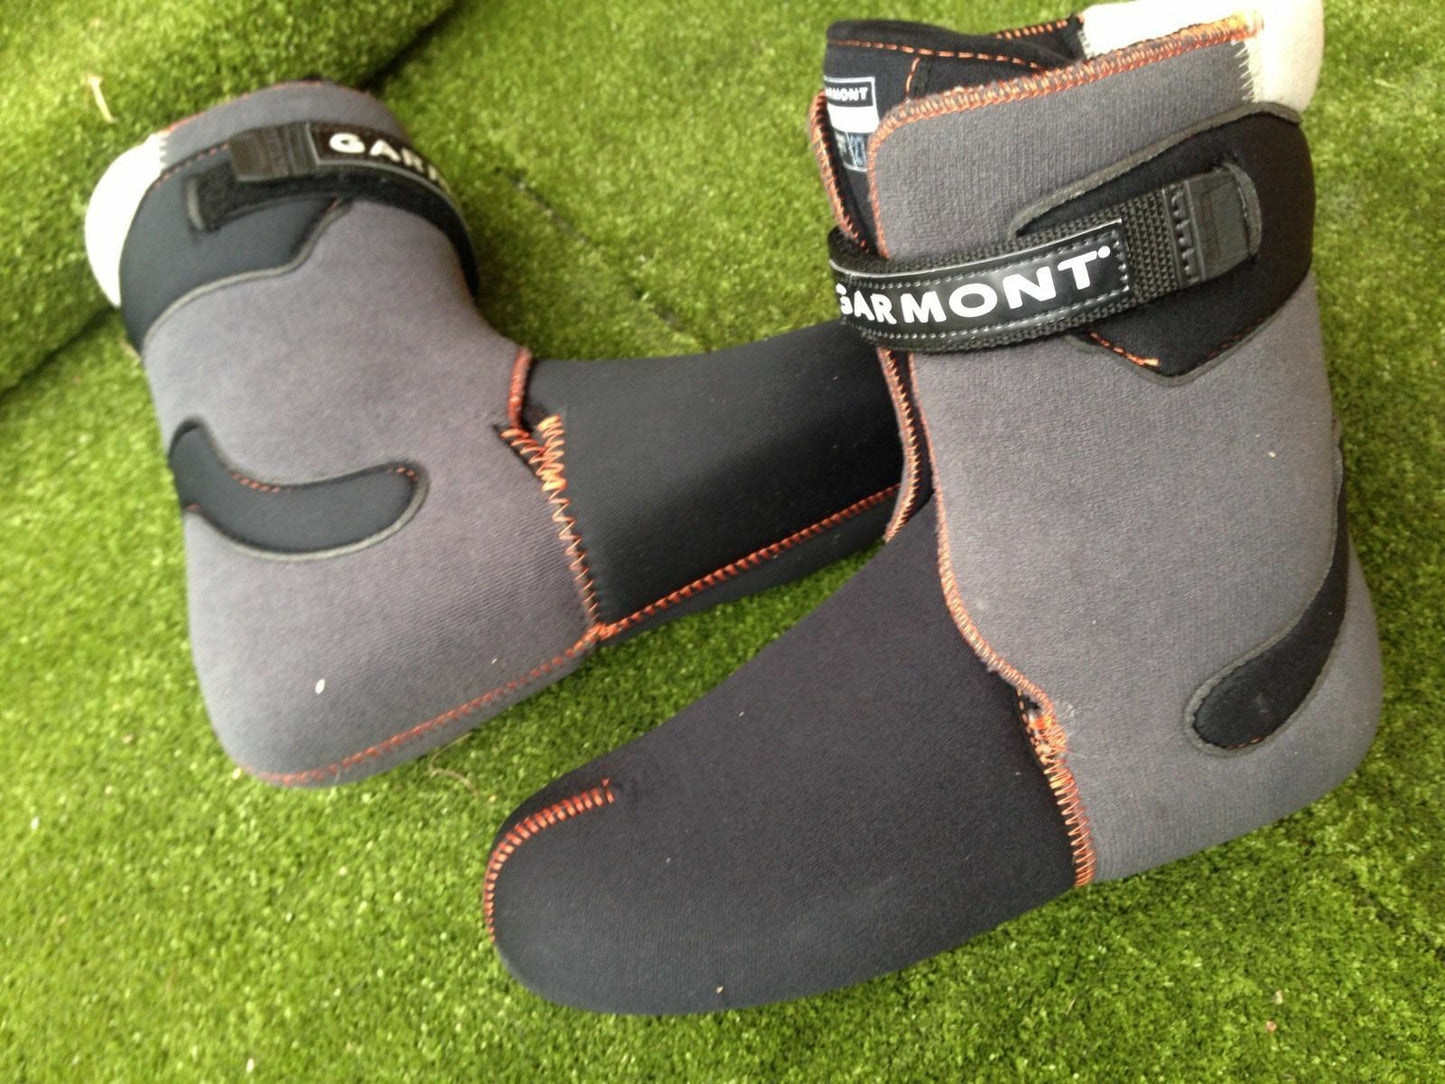 Scarpette per scarponi da sci bassi liners for backcountry ski boots Thermofit